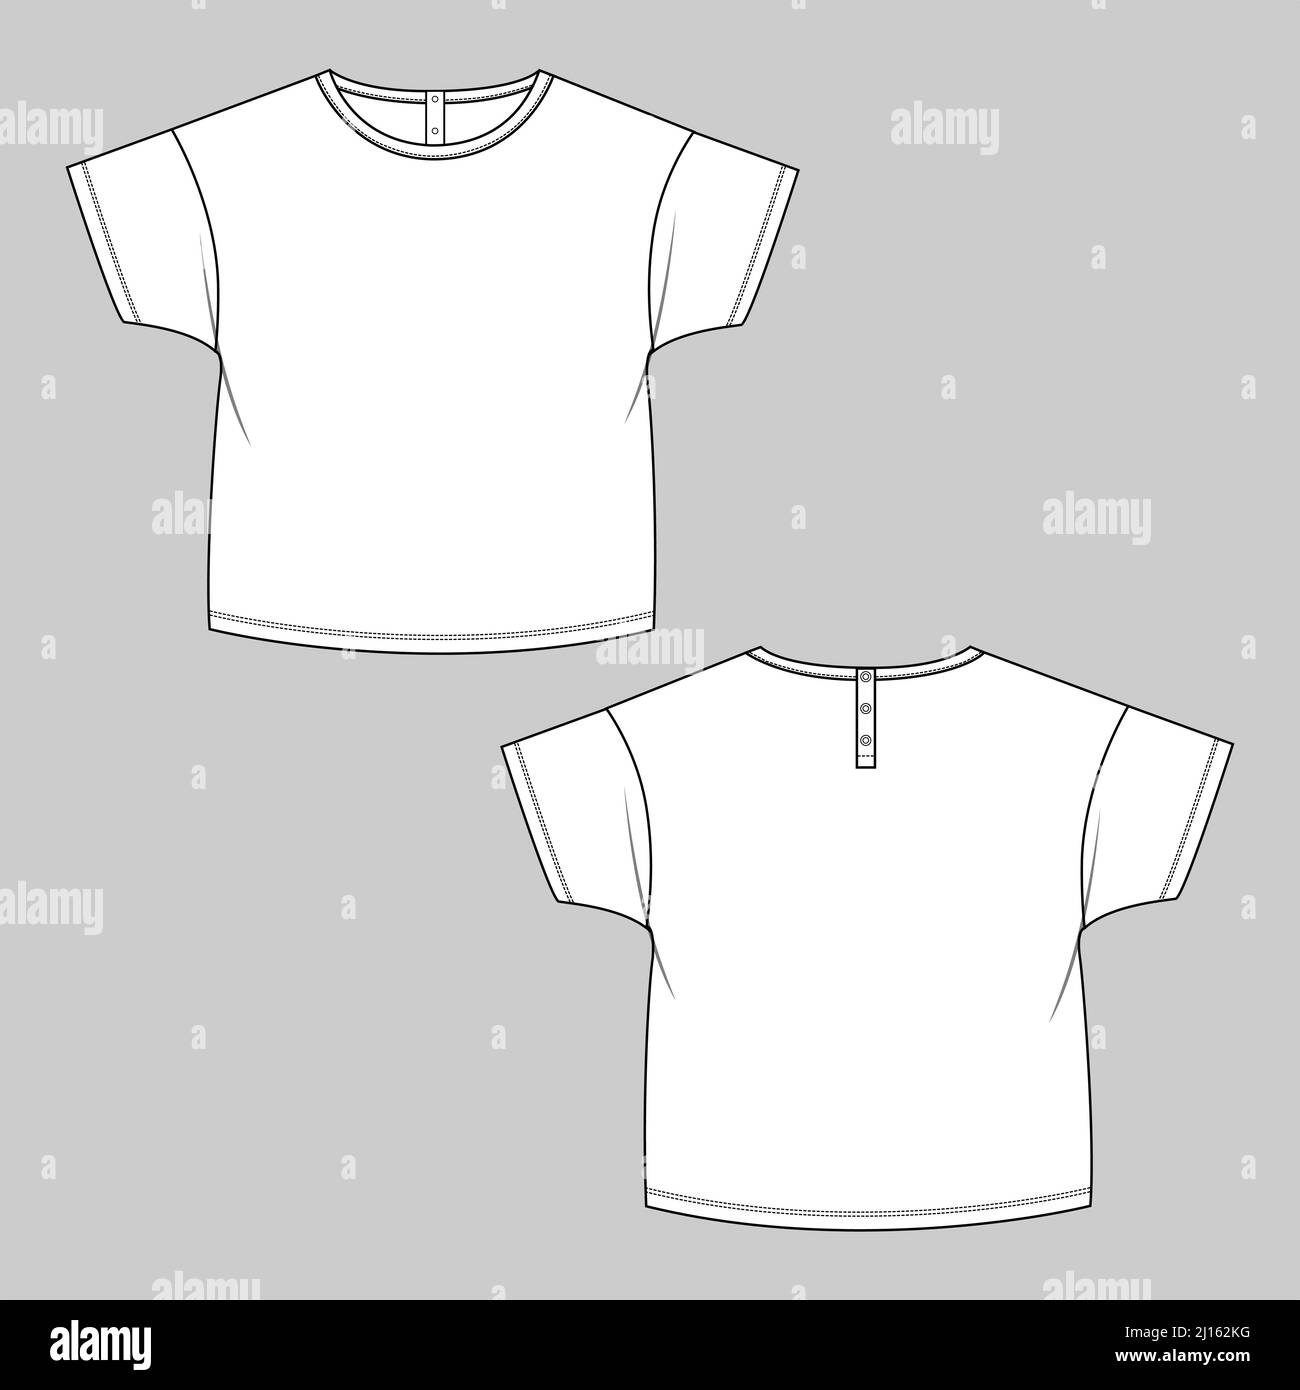 Kurzarm Rundhalsausschnitt T-Shirt Technische Mode flach Skizze Vektor Illustration Vorlage für Kinder. Bekleidung Kleid Design CAD Mock Up Vektor Illustra Stock Vektor